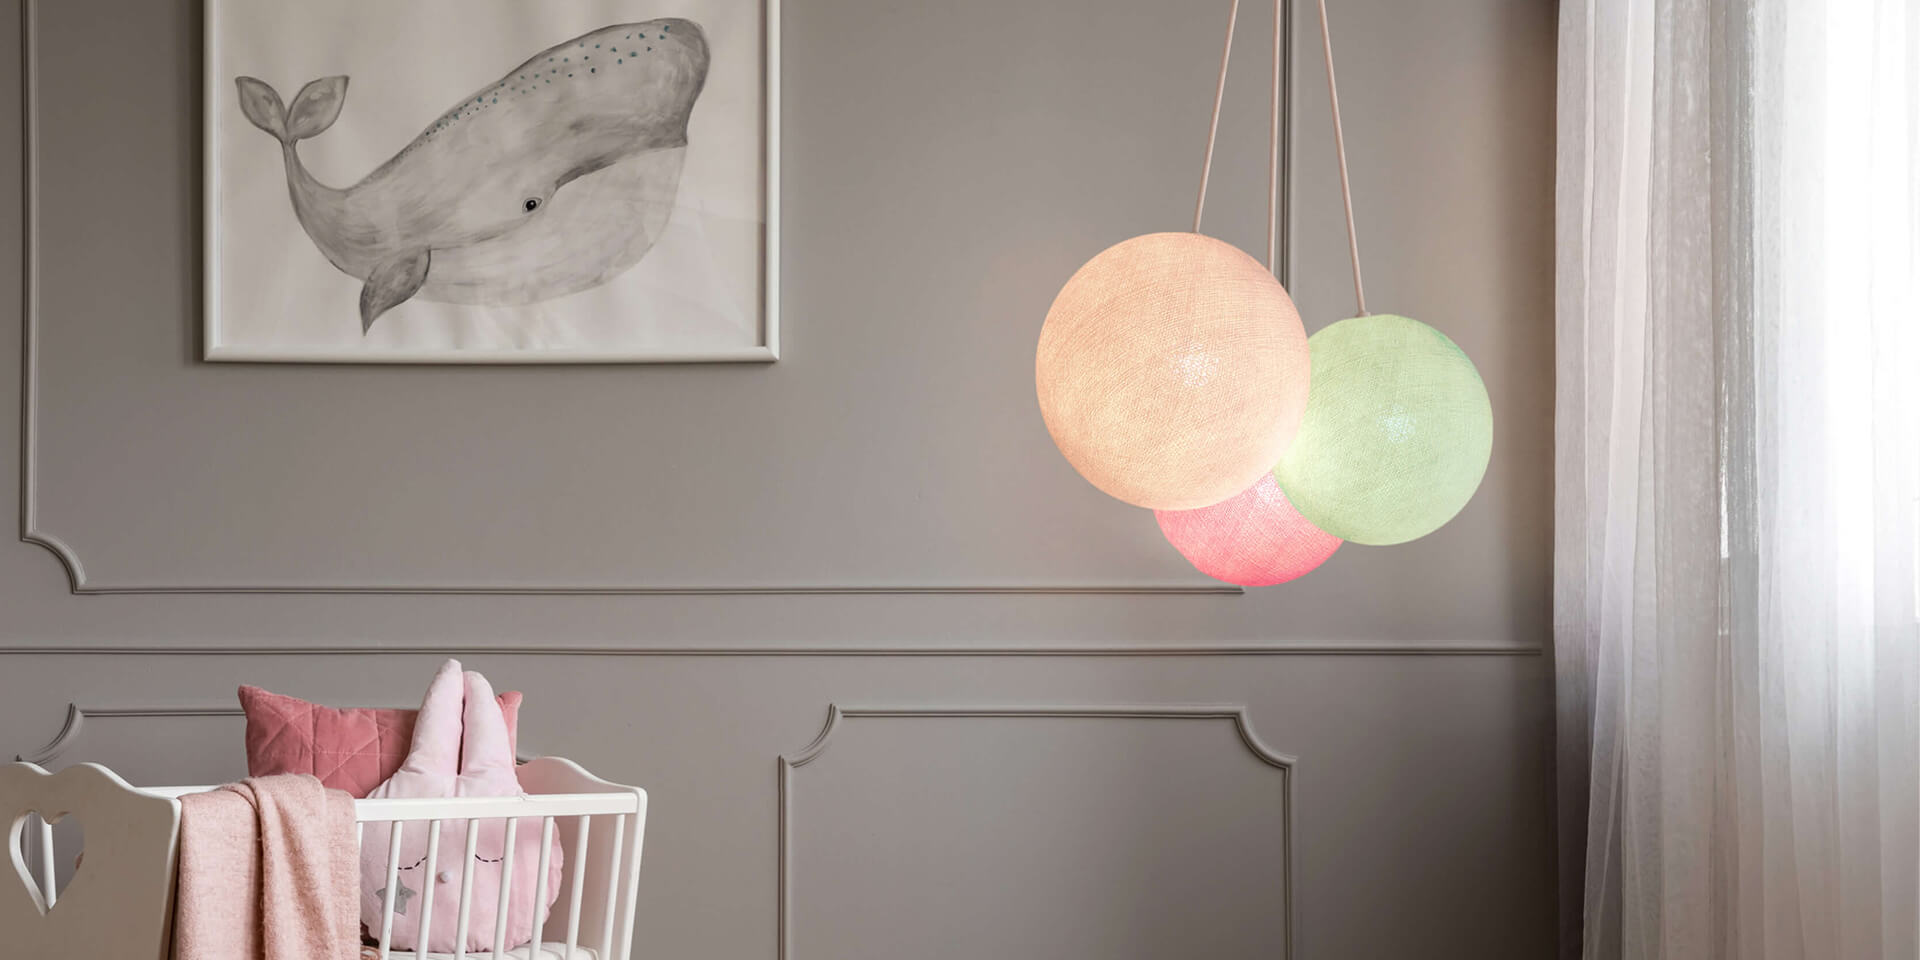 LED Deckenlampe mit 3 Kugeln aus Baumwolle. Pendelleuche in Weiß, Mint und Rosa. Höhenverstellbare Hängelampe, ideal für Kinderzimmer und Babyzimmer. Dimmbare Deckenleuchte.